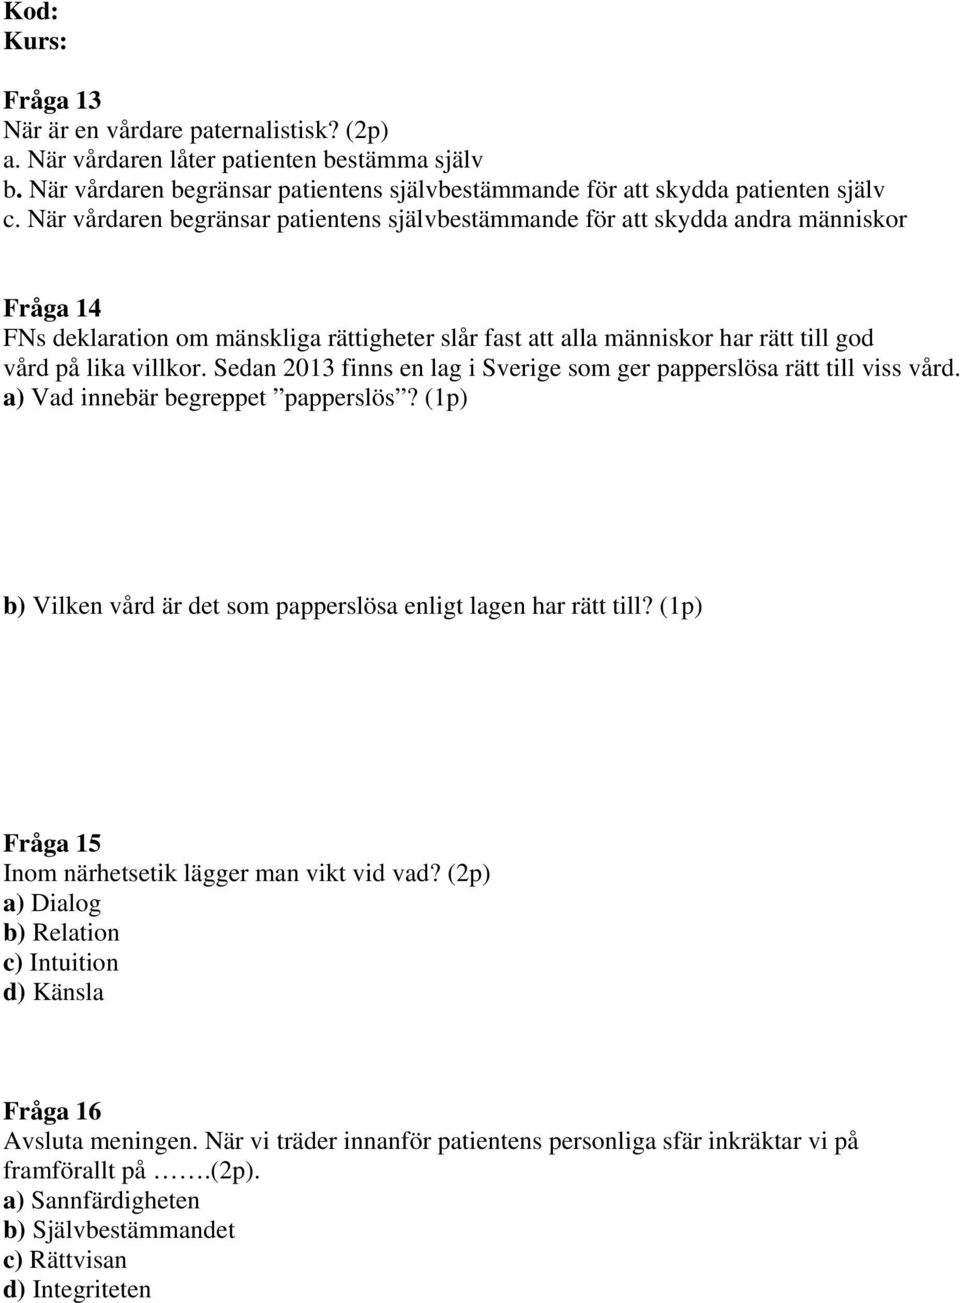 Sedan 2013 finns en lag i Sverige som ger papperslösa rätt till viss vård. a) Vad innebär begreppet papperslös? (1p) b) Vilken vård är det som papperslösa enligt lagen har rätt till?